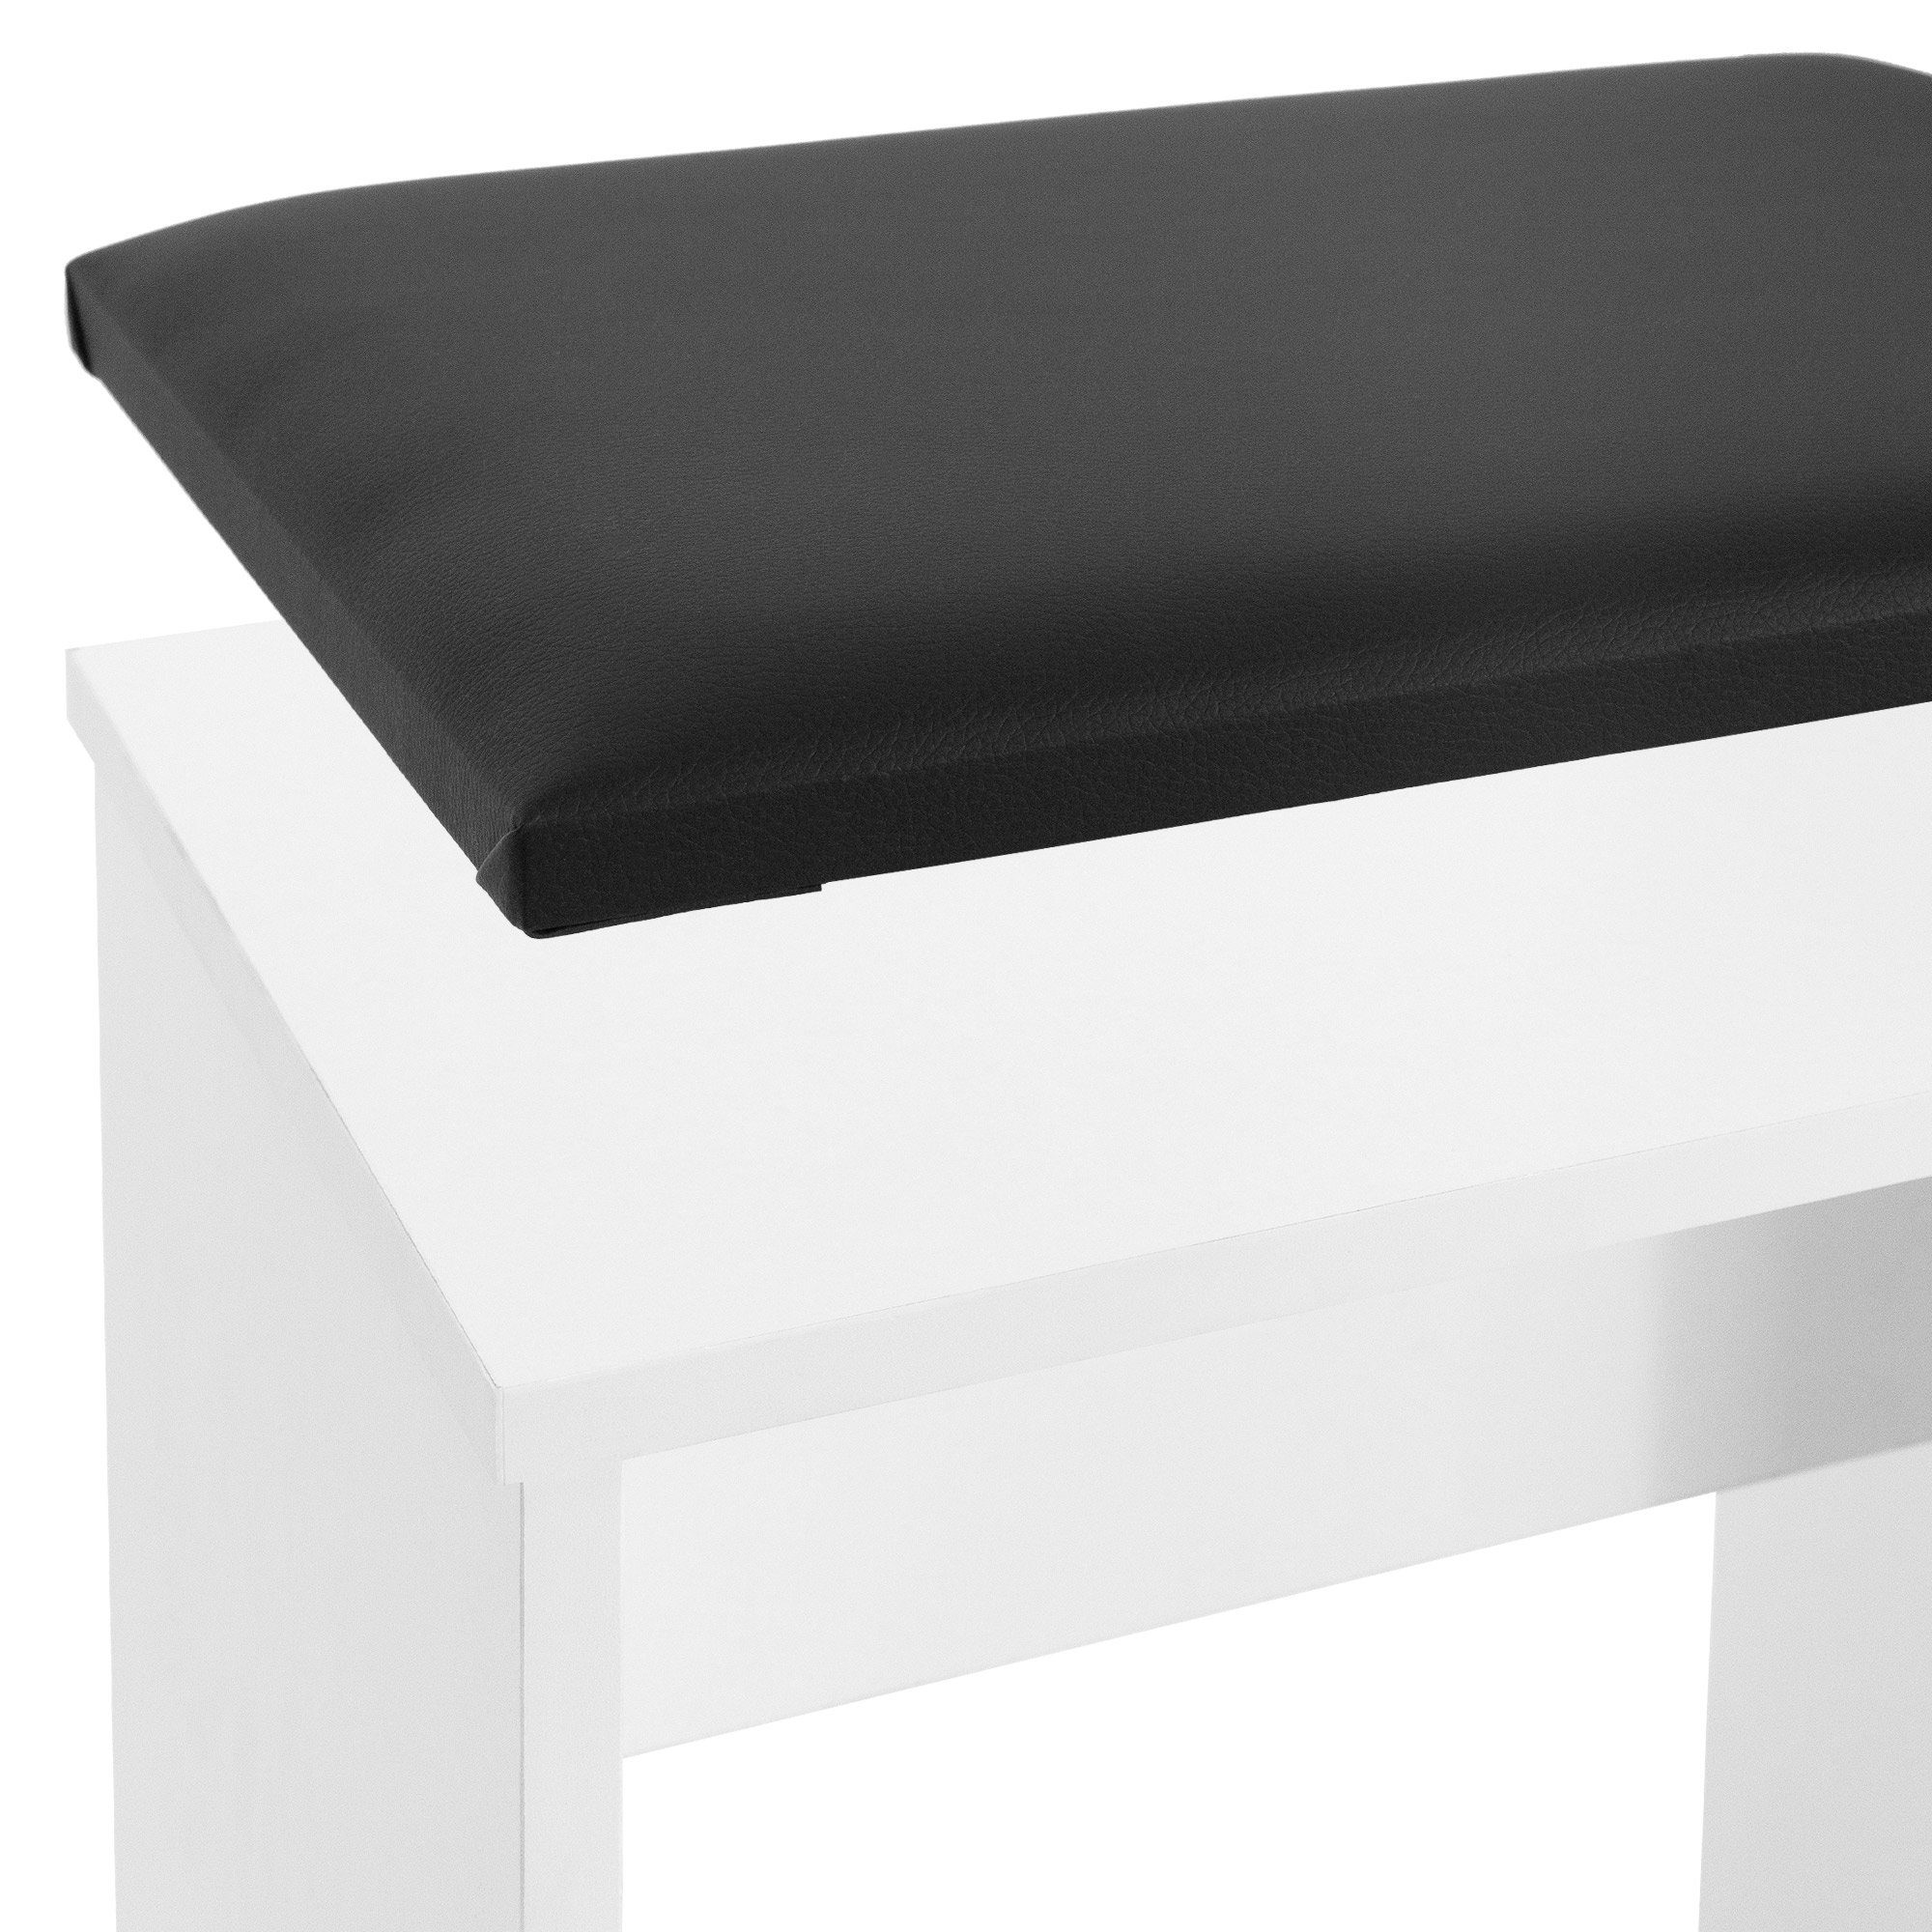 Tisch, Schminkkommode Spiegel Hocker ML-DESIGN Frisierkommode Kosmetiktisch Make-up 60x40x122cm Schminktisch Mit modern Frisiertisch Weiß